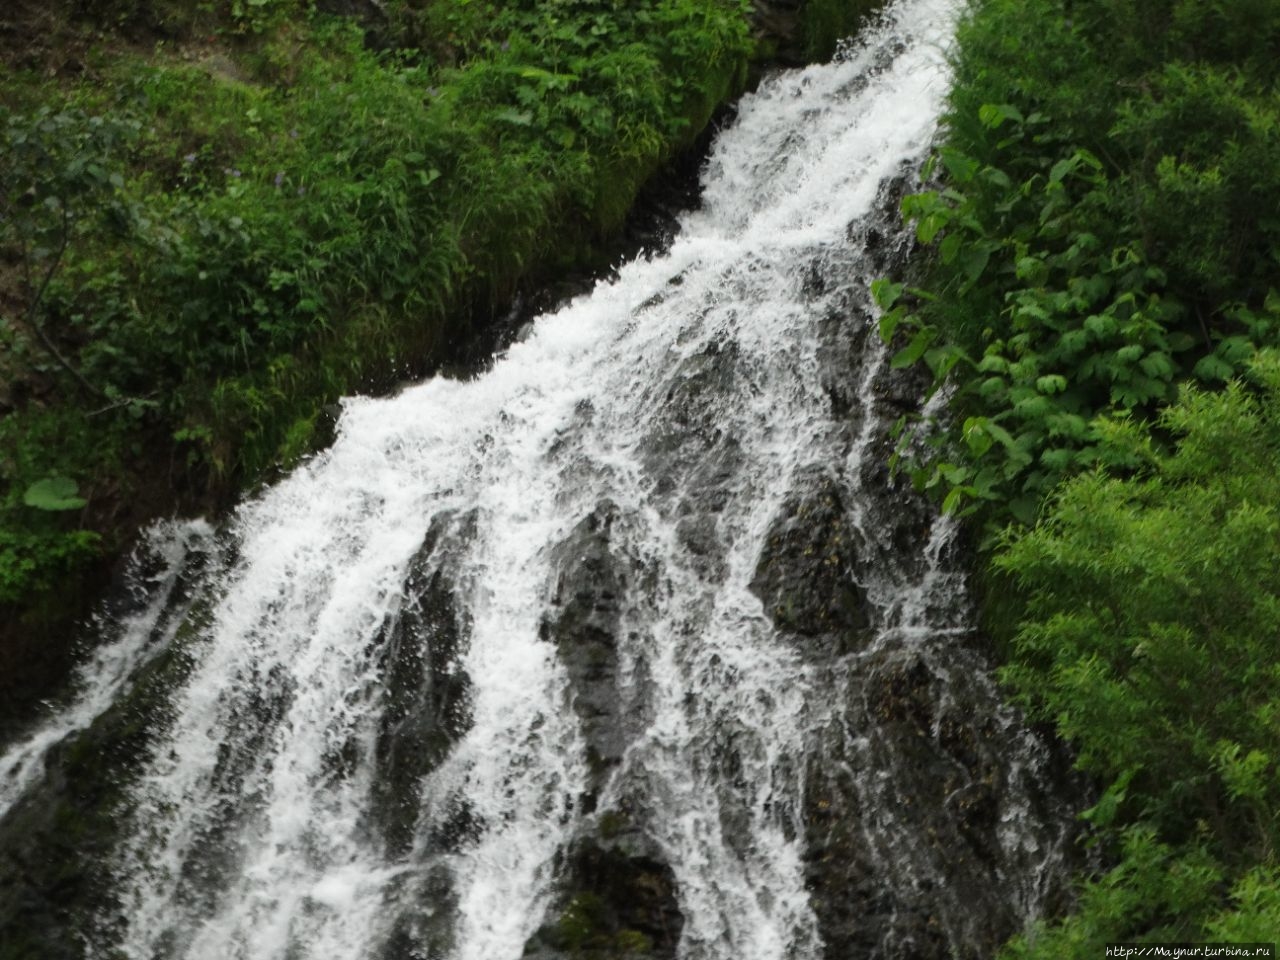 Водопад  Салют / Waterfall Salut (Salyut)